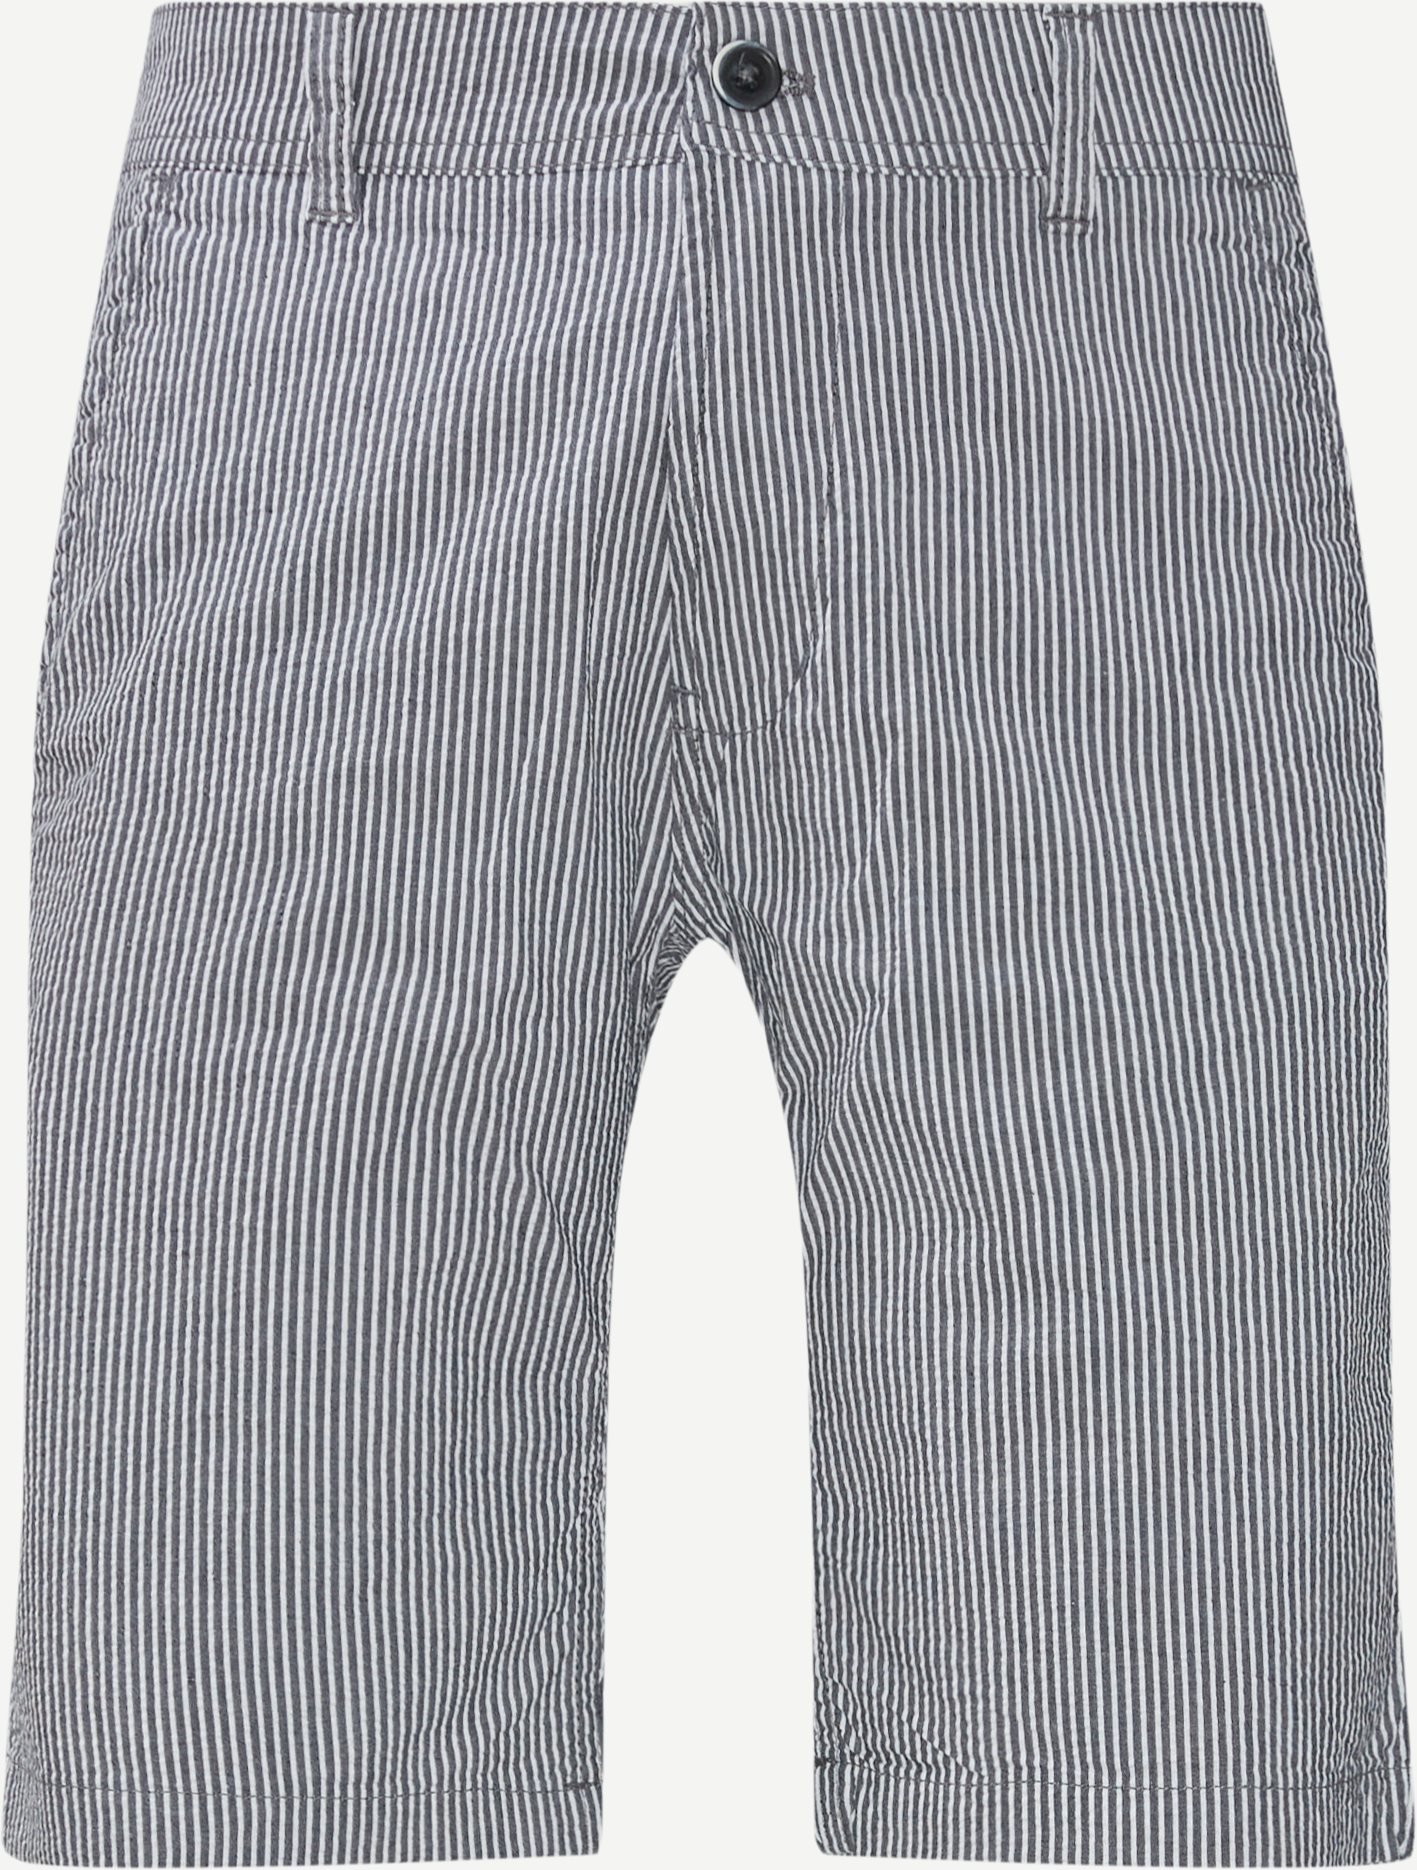 Shorts - Slim fit - Blå